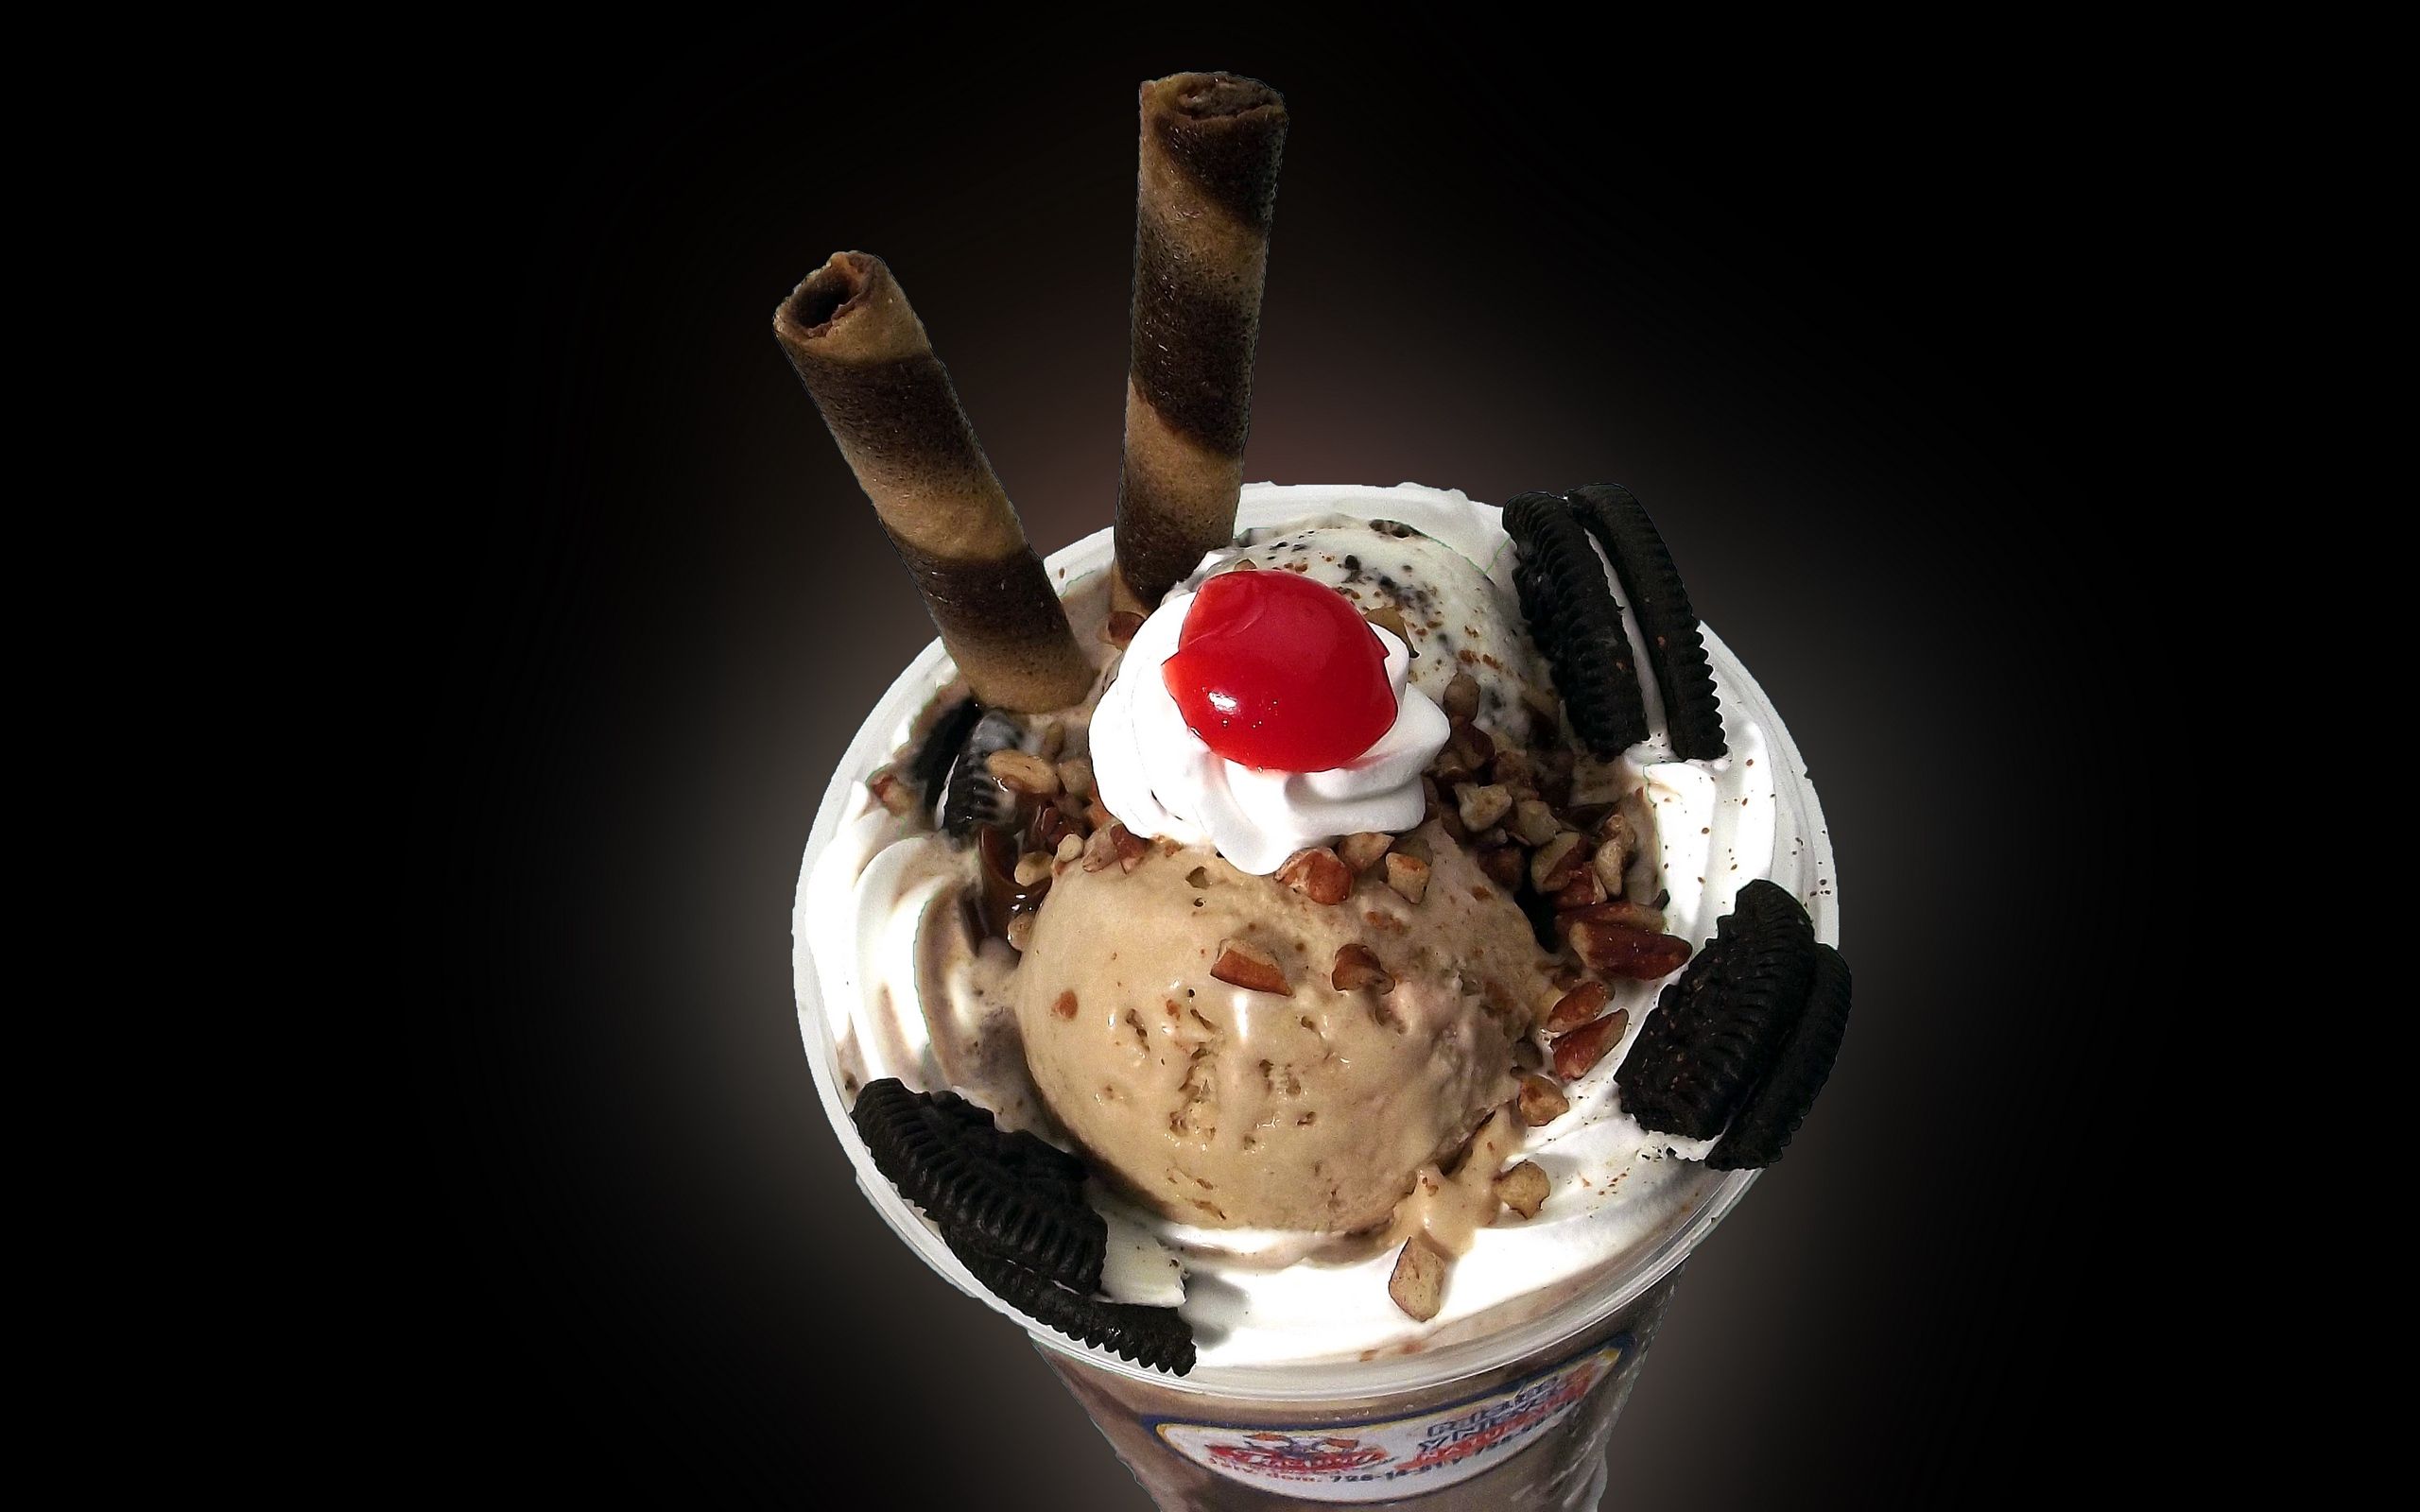 Download wallpaper 2560x1600 ice cream, dessert, oreo, frappuccino